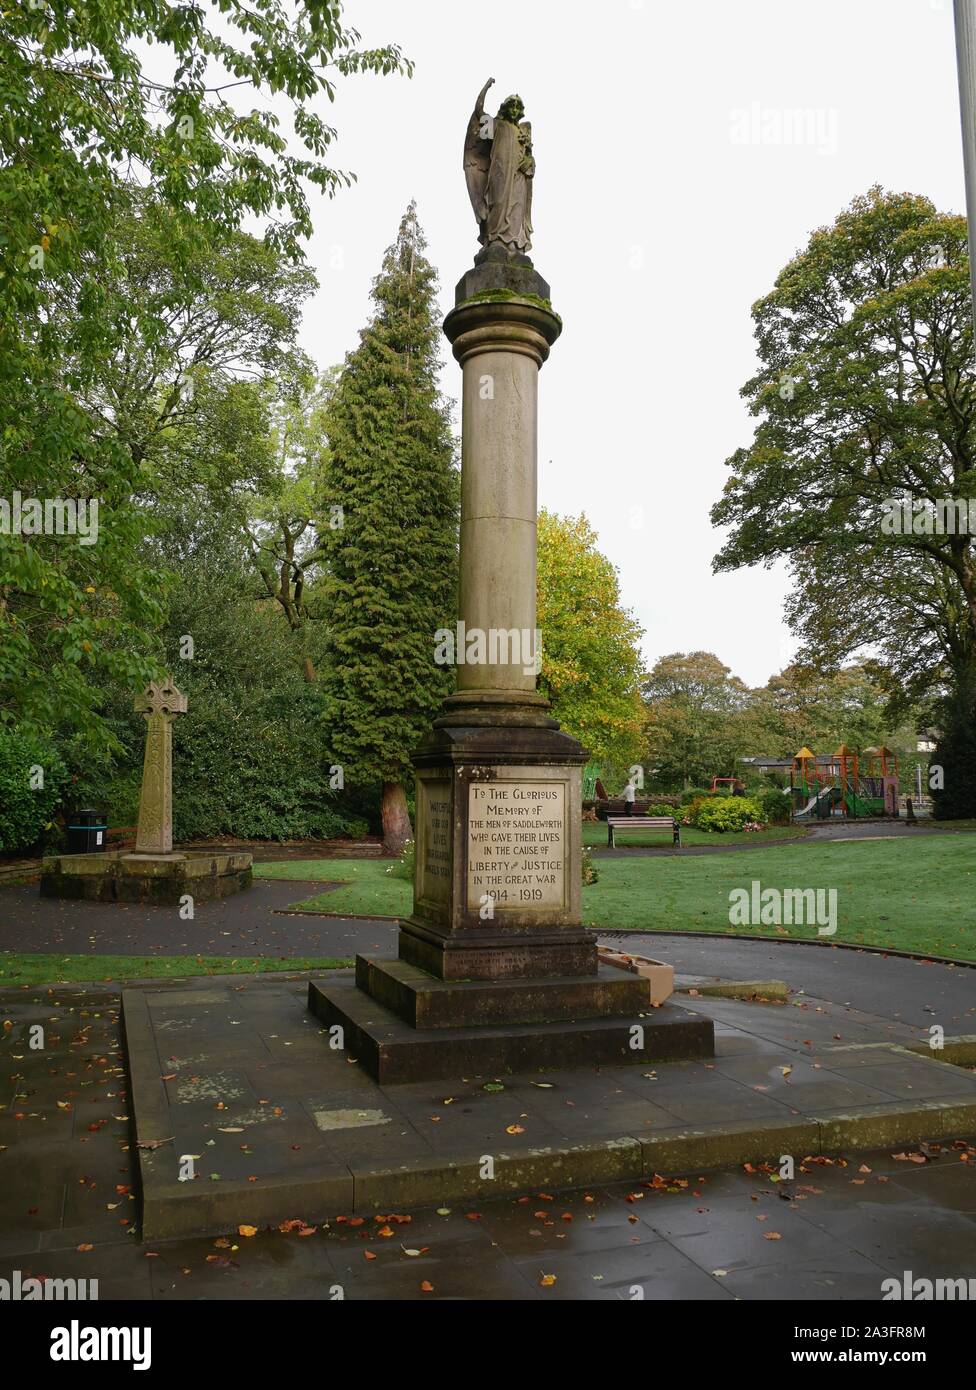 Denkmal zur Erinnerung an die Männer von saddleworth, die ihr Leben für die Freiheit und Gerechtigkeit gab im Großen Krieg 1914-1918 in Uppermill Stockfoto